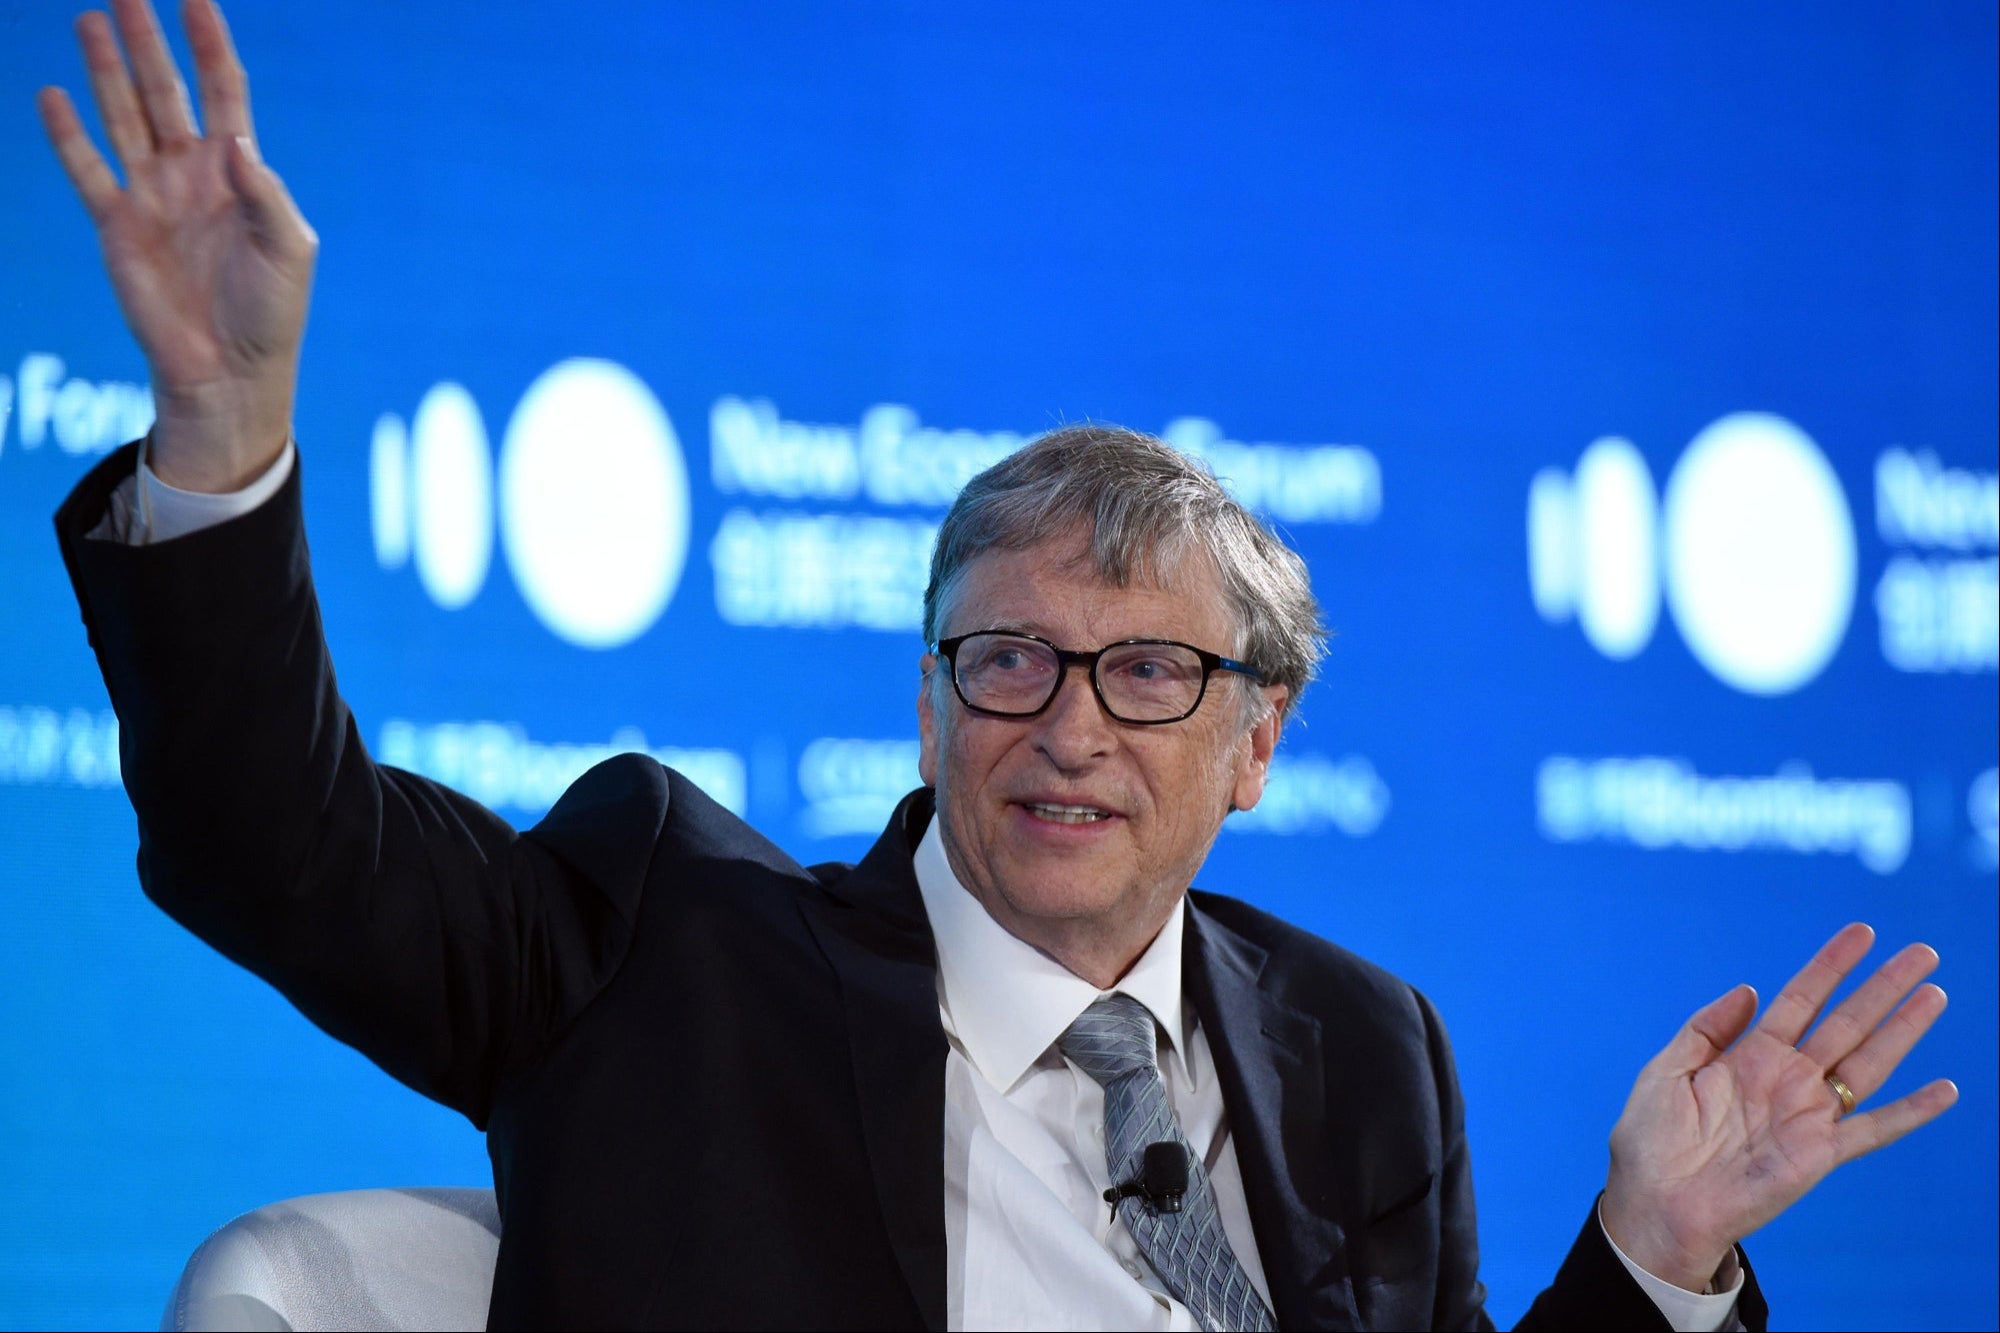 ¿Bill Gates realmente le ofreció a una reportera de televisión un cheque en blanco?